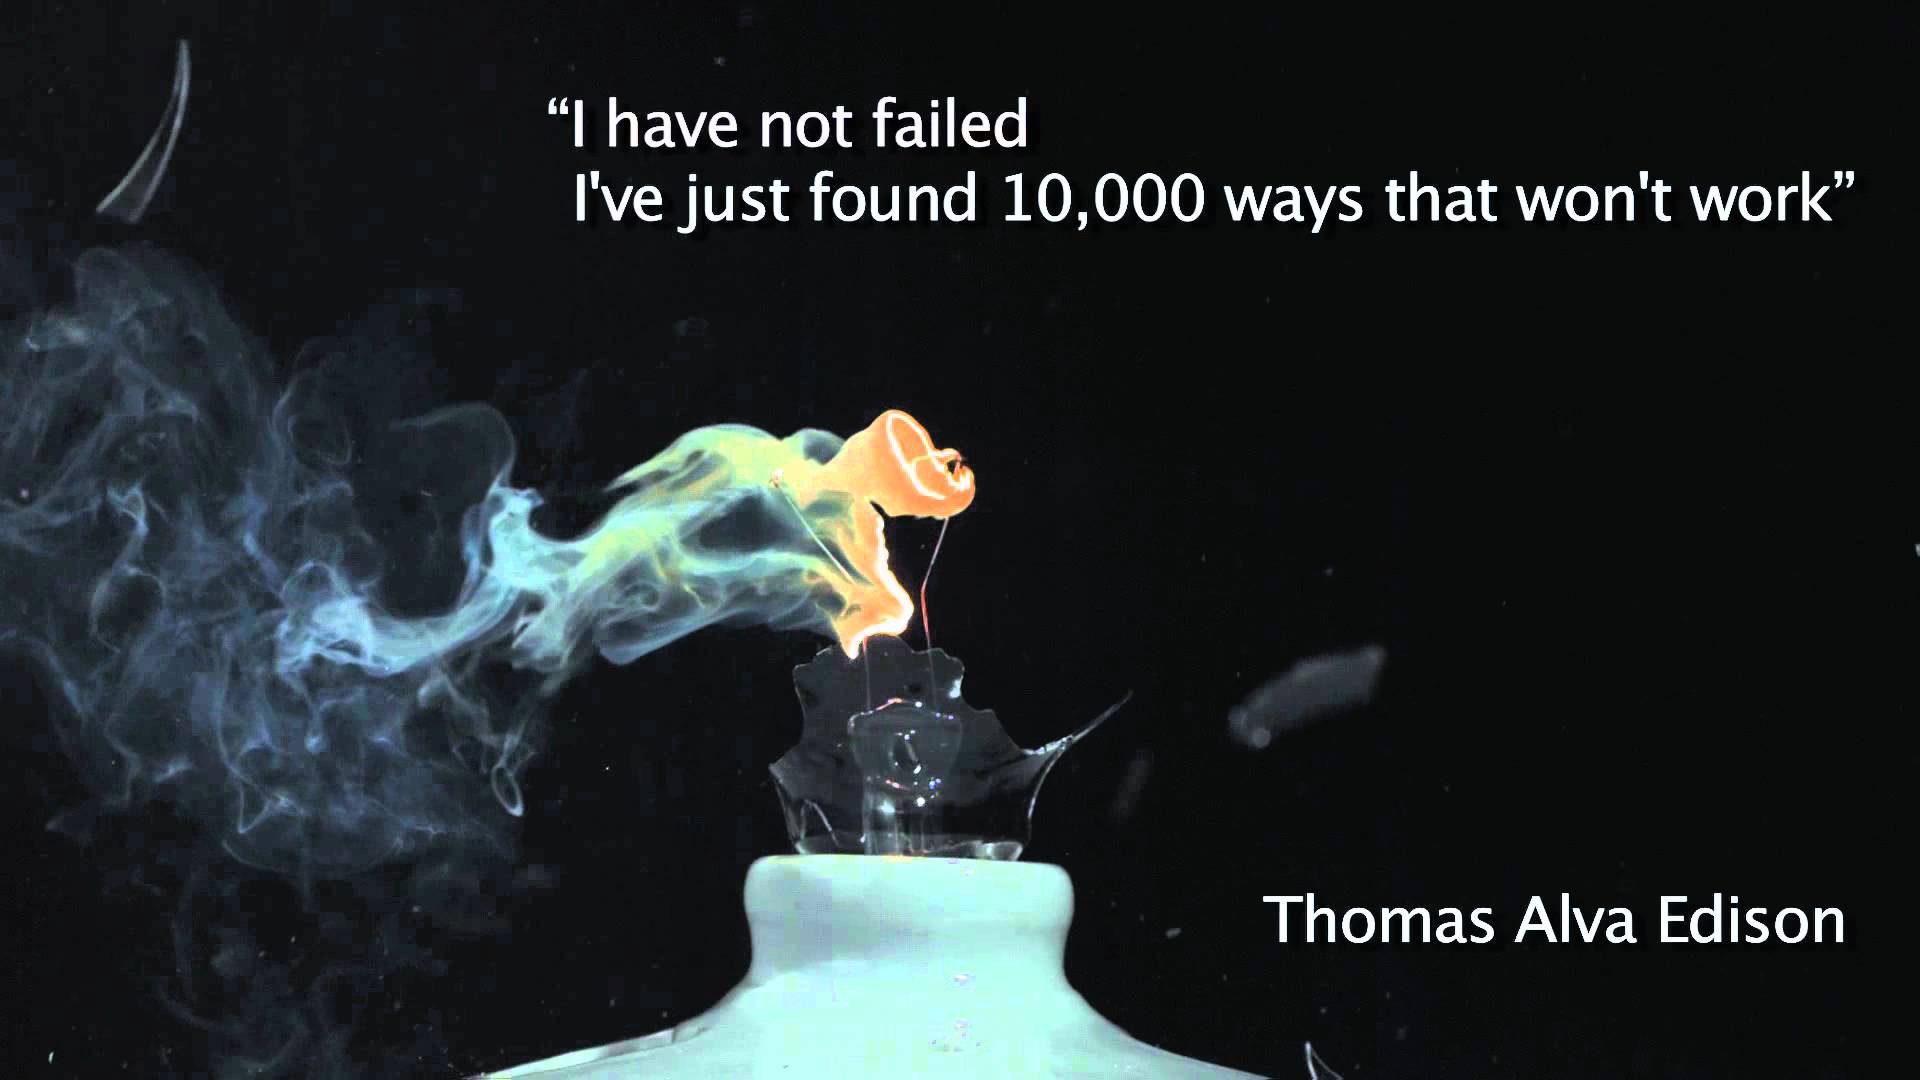 Thomas Alva Edison quote about failure. Science quotes